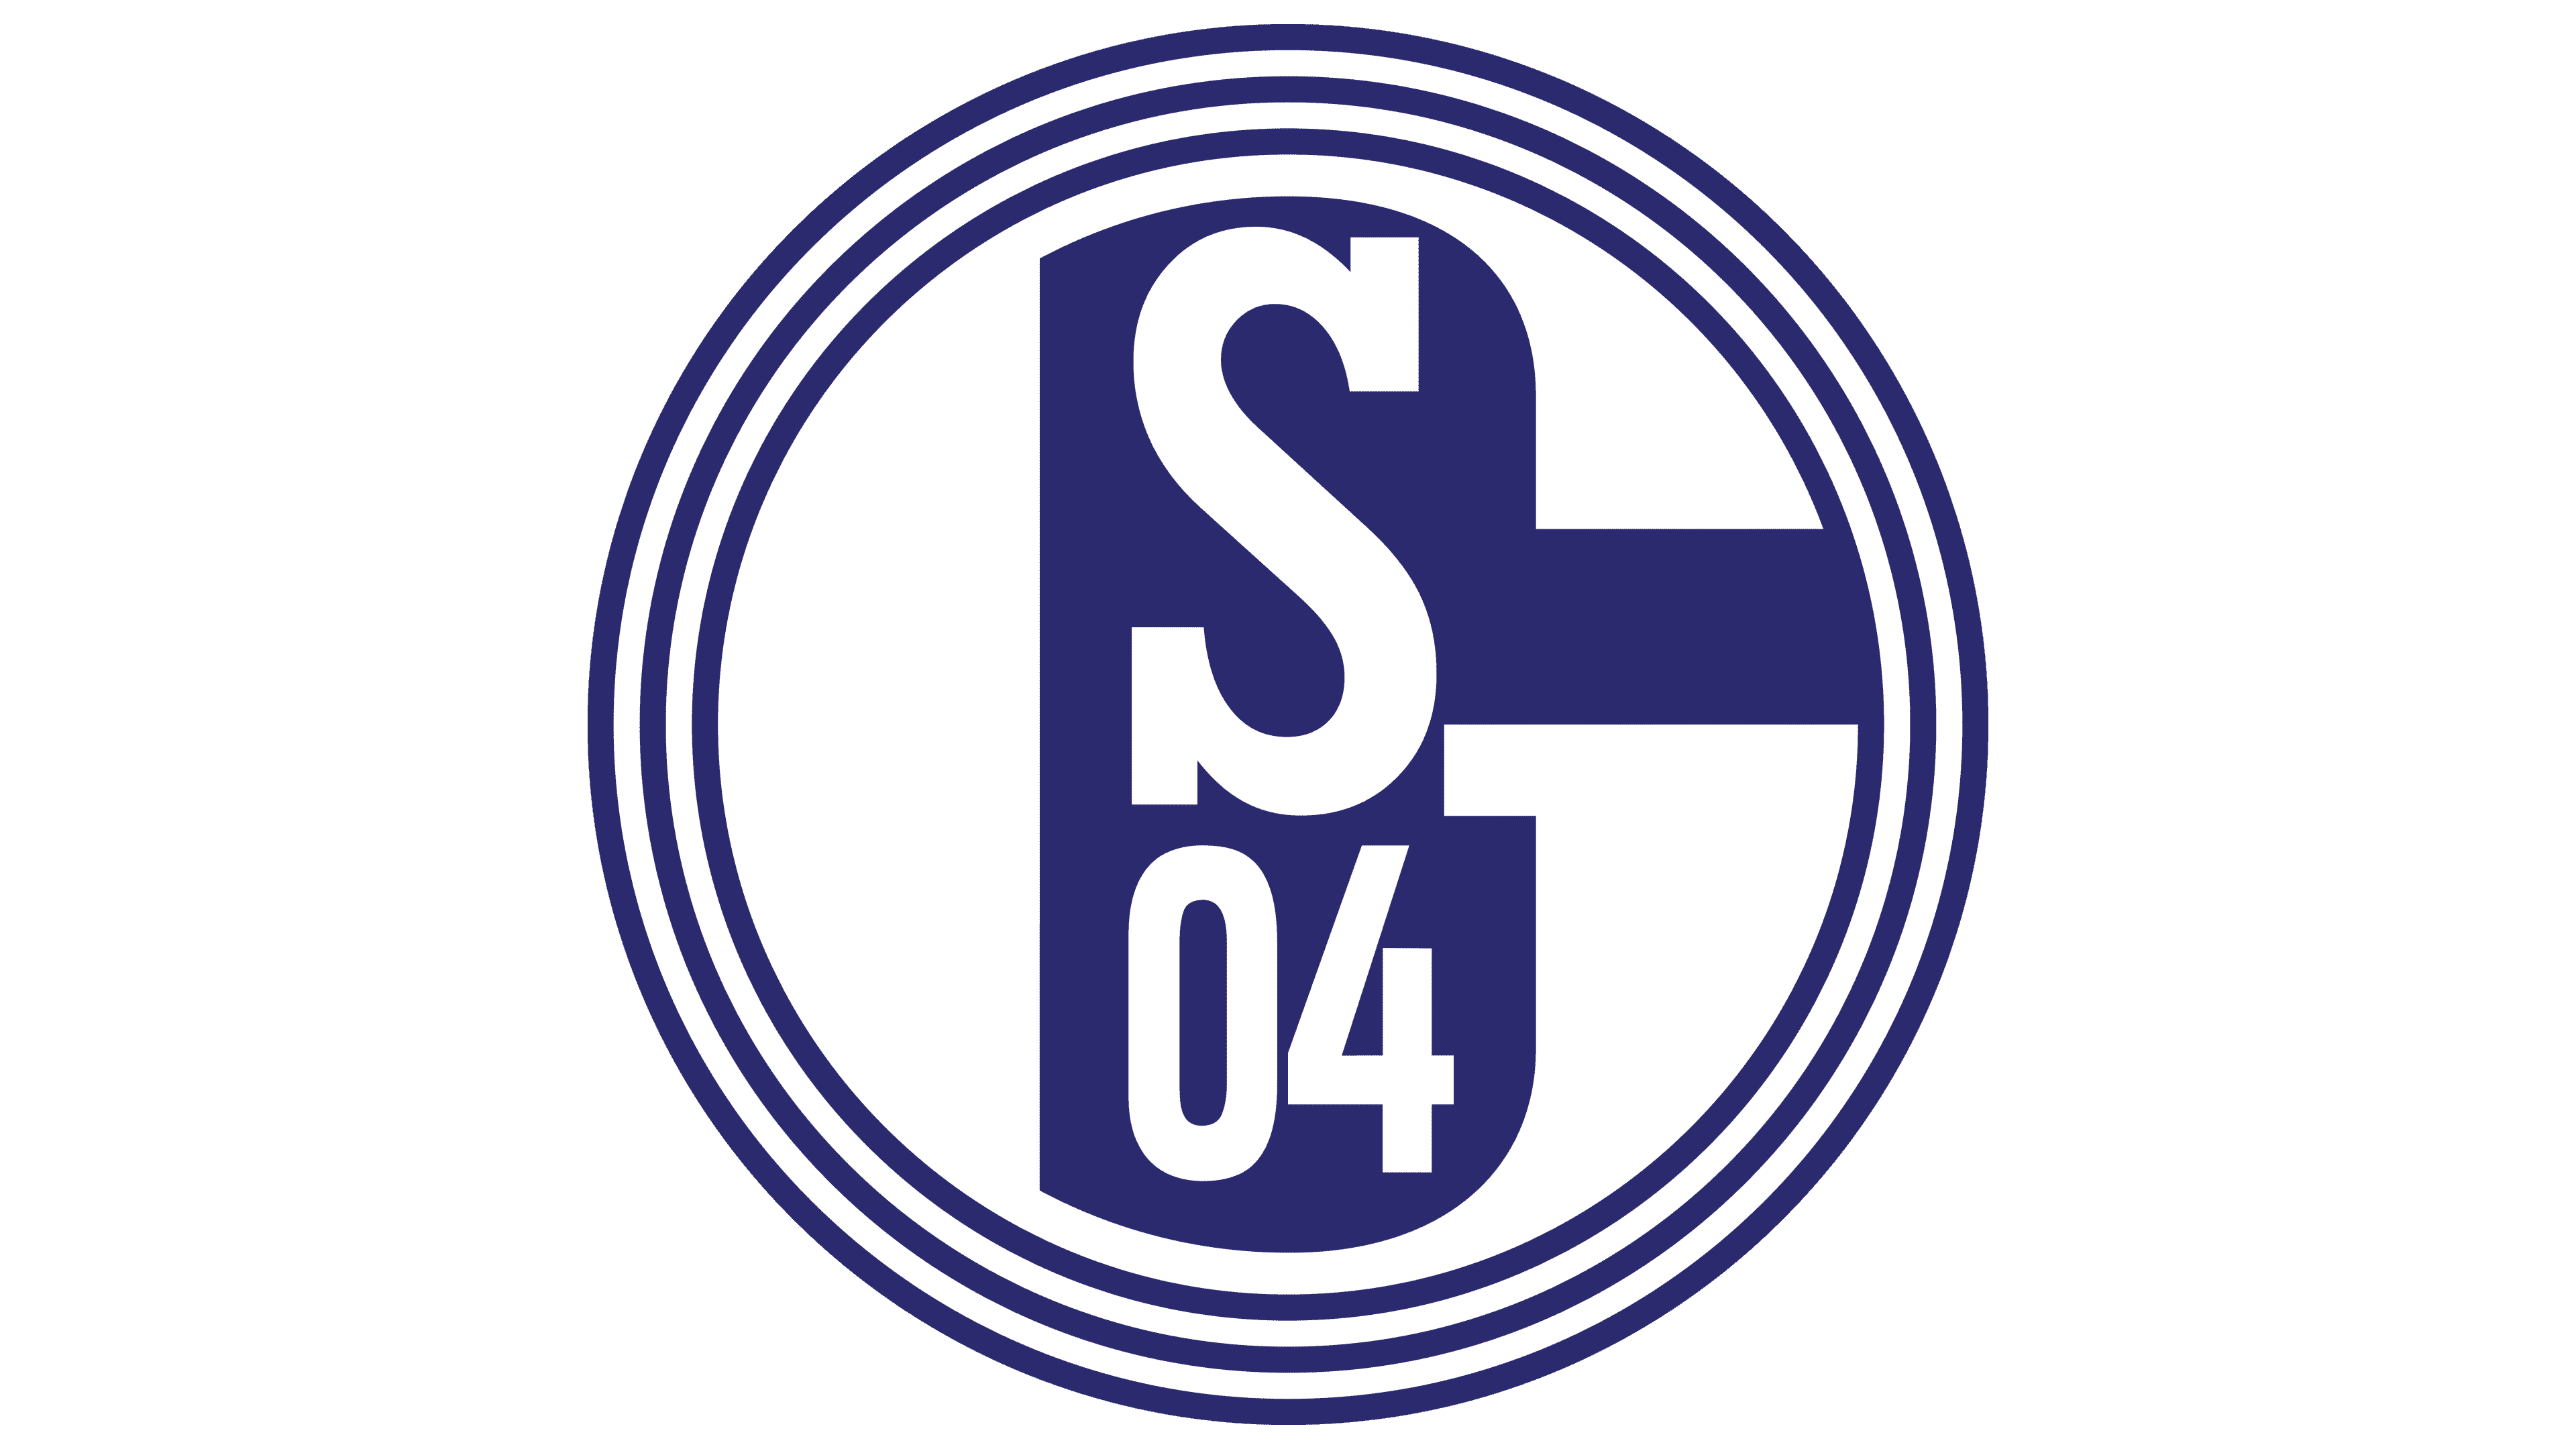 FC Schalke 04 Pin Logo Anstecker Fussball Bundesliga #047 